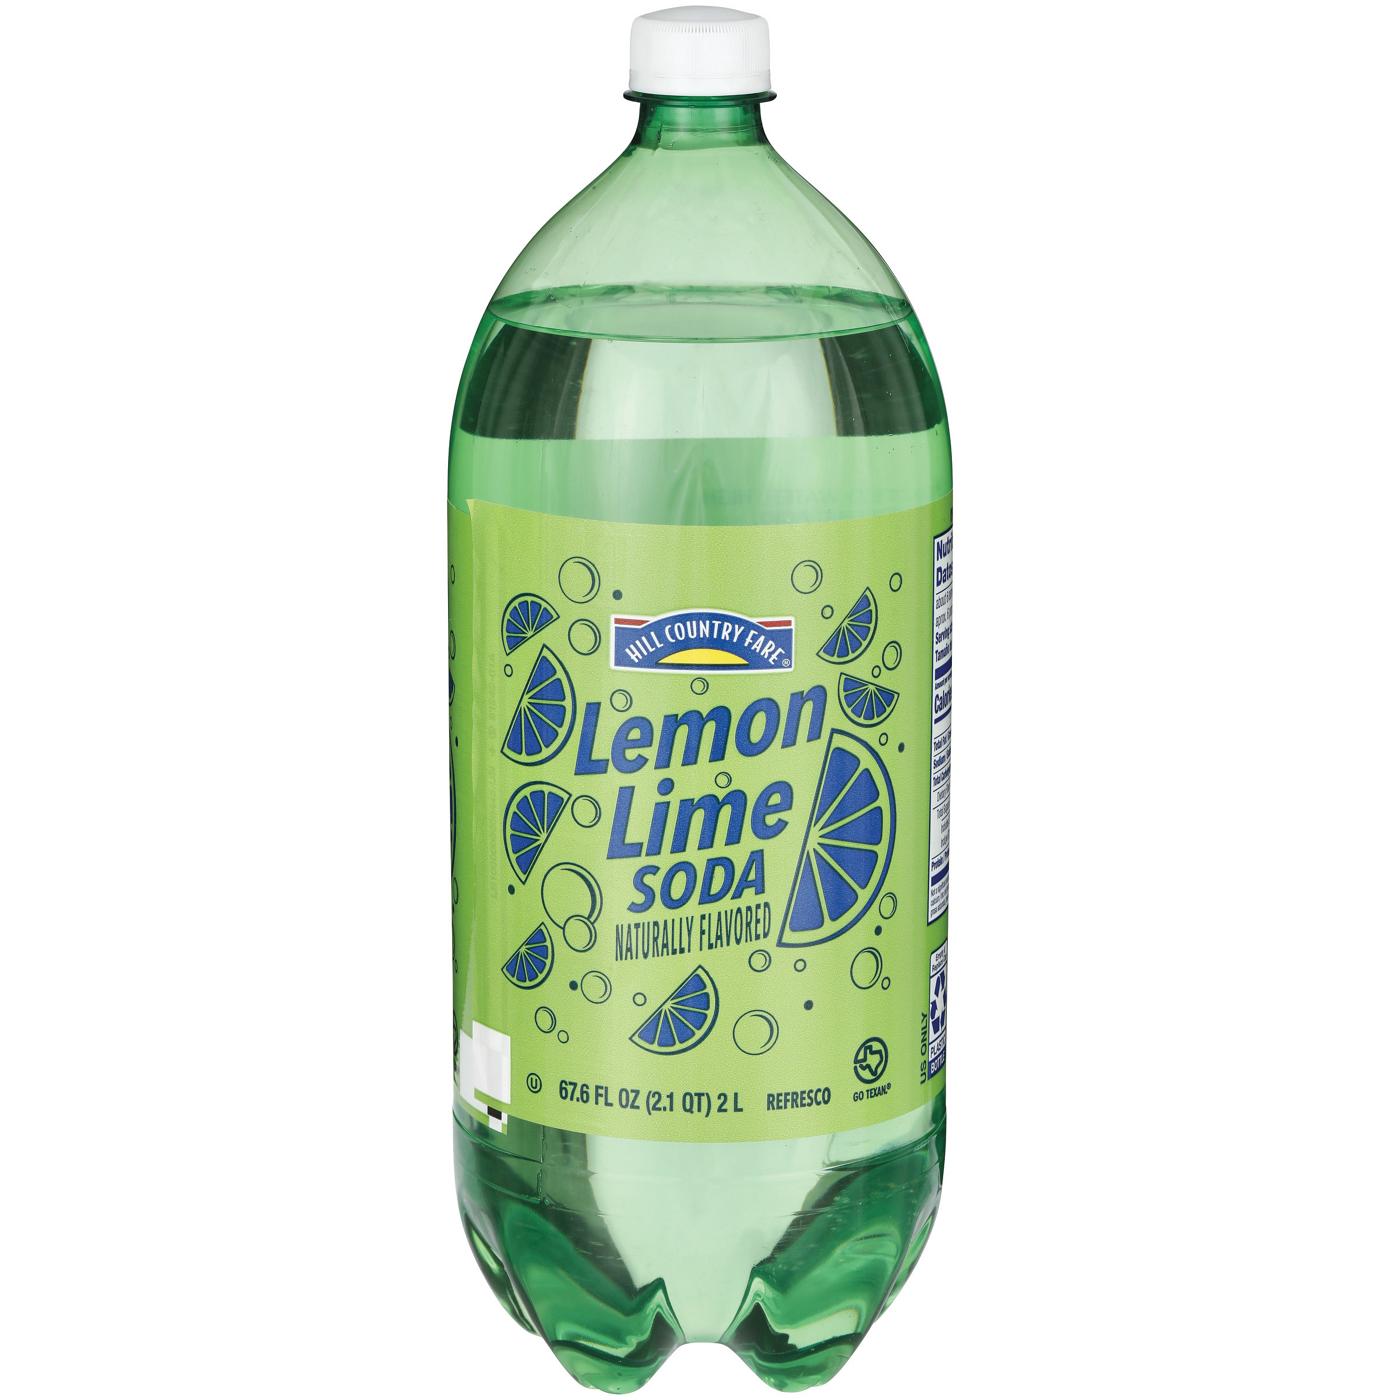 HCF Hill Country Fair Lemon Lime Soda; image 2 of 2